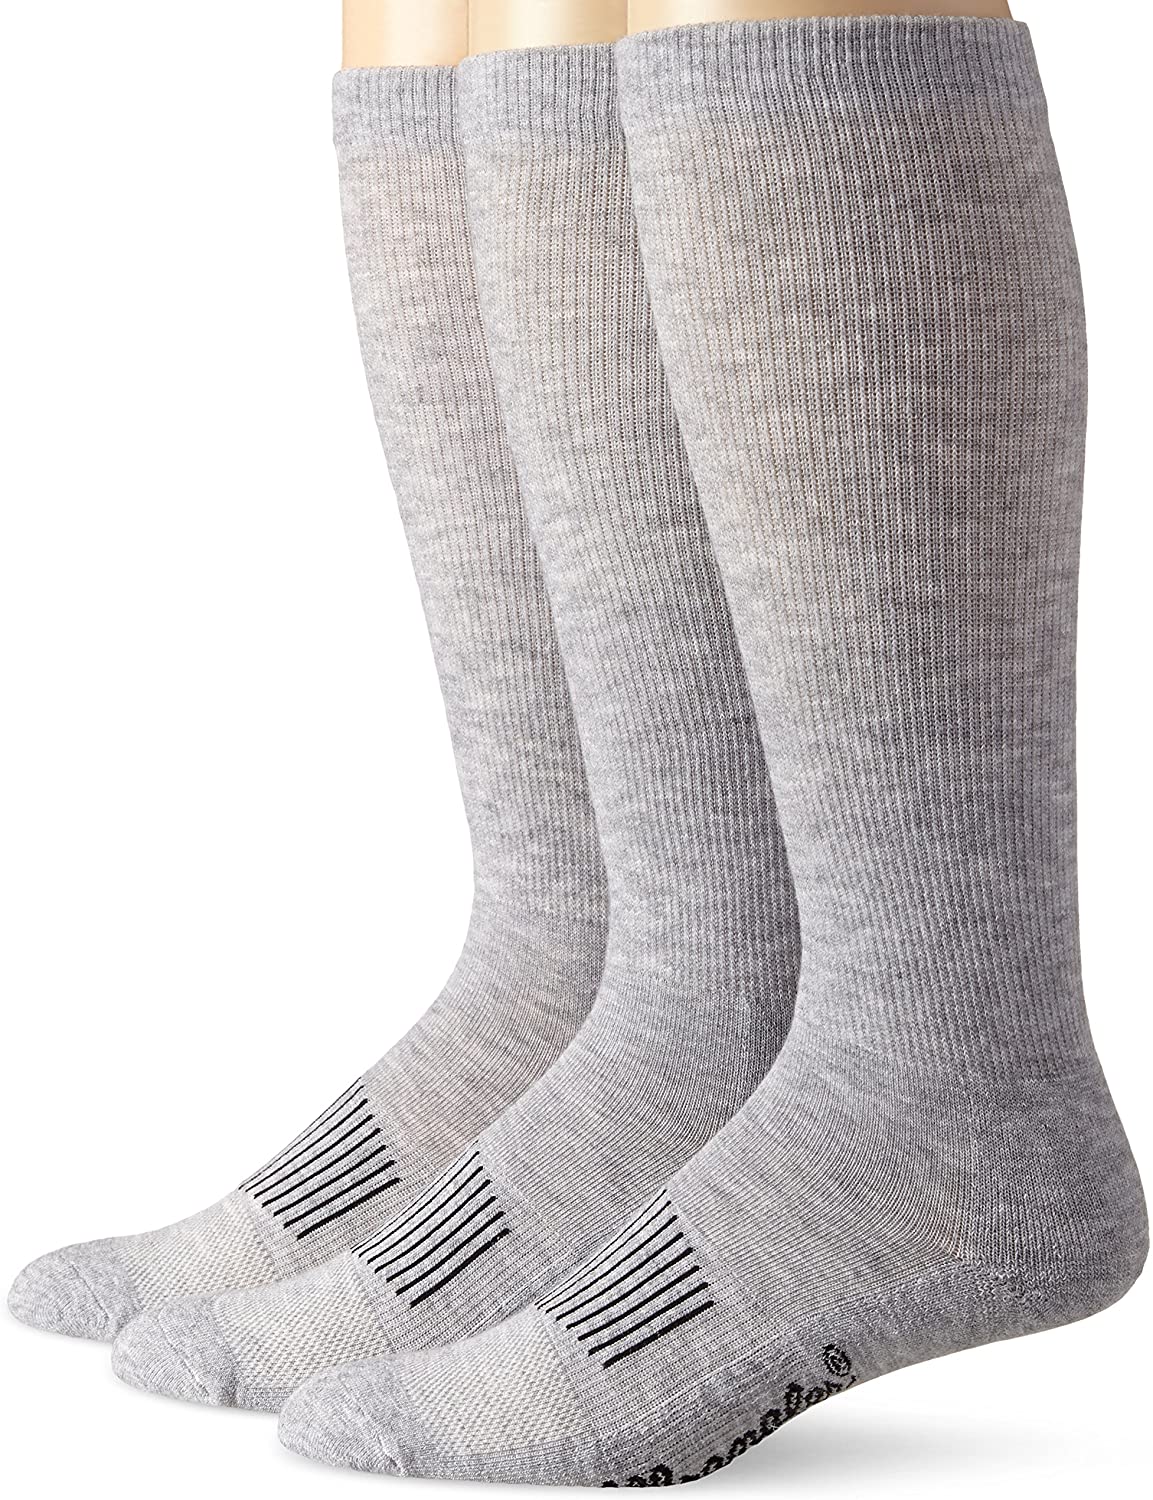 Носки Wrangler. Носки Wrangler бежевые. Носки Wrangler длинные. Grey Socks. Сапоги носки купить